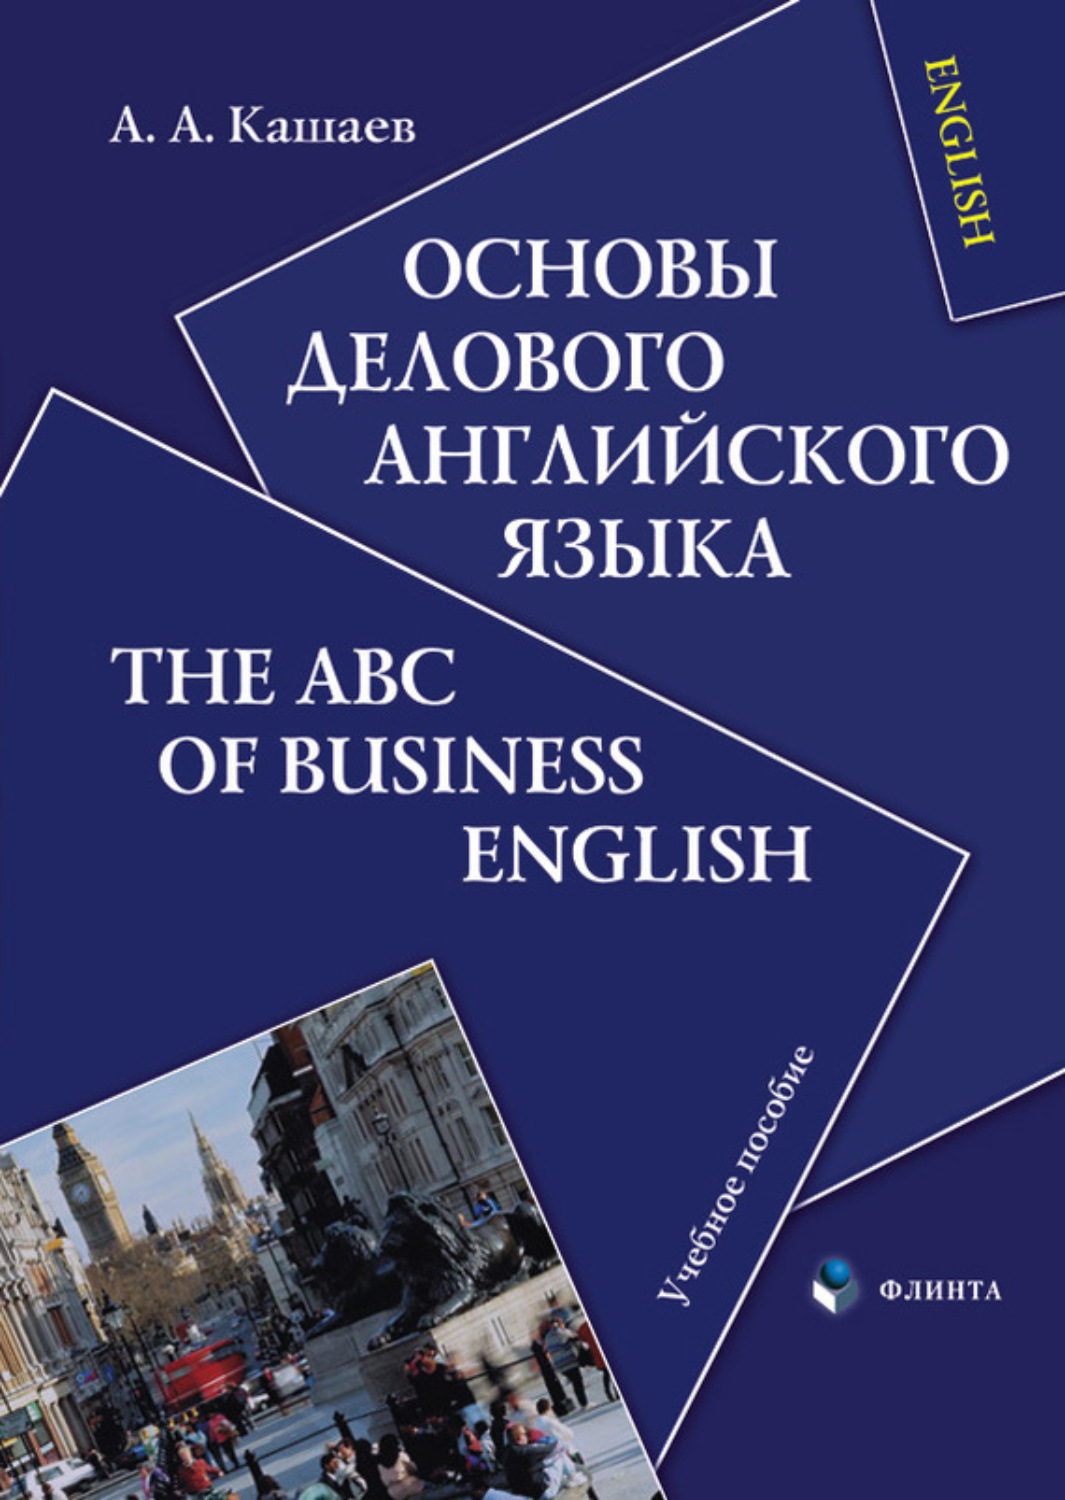 Учебное пособие: Business English